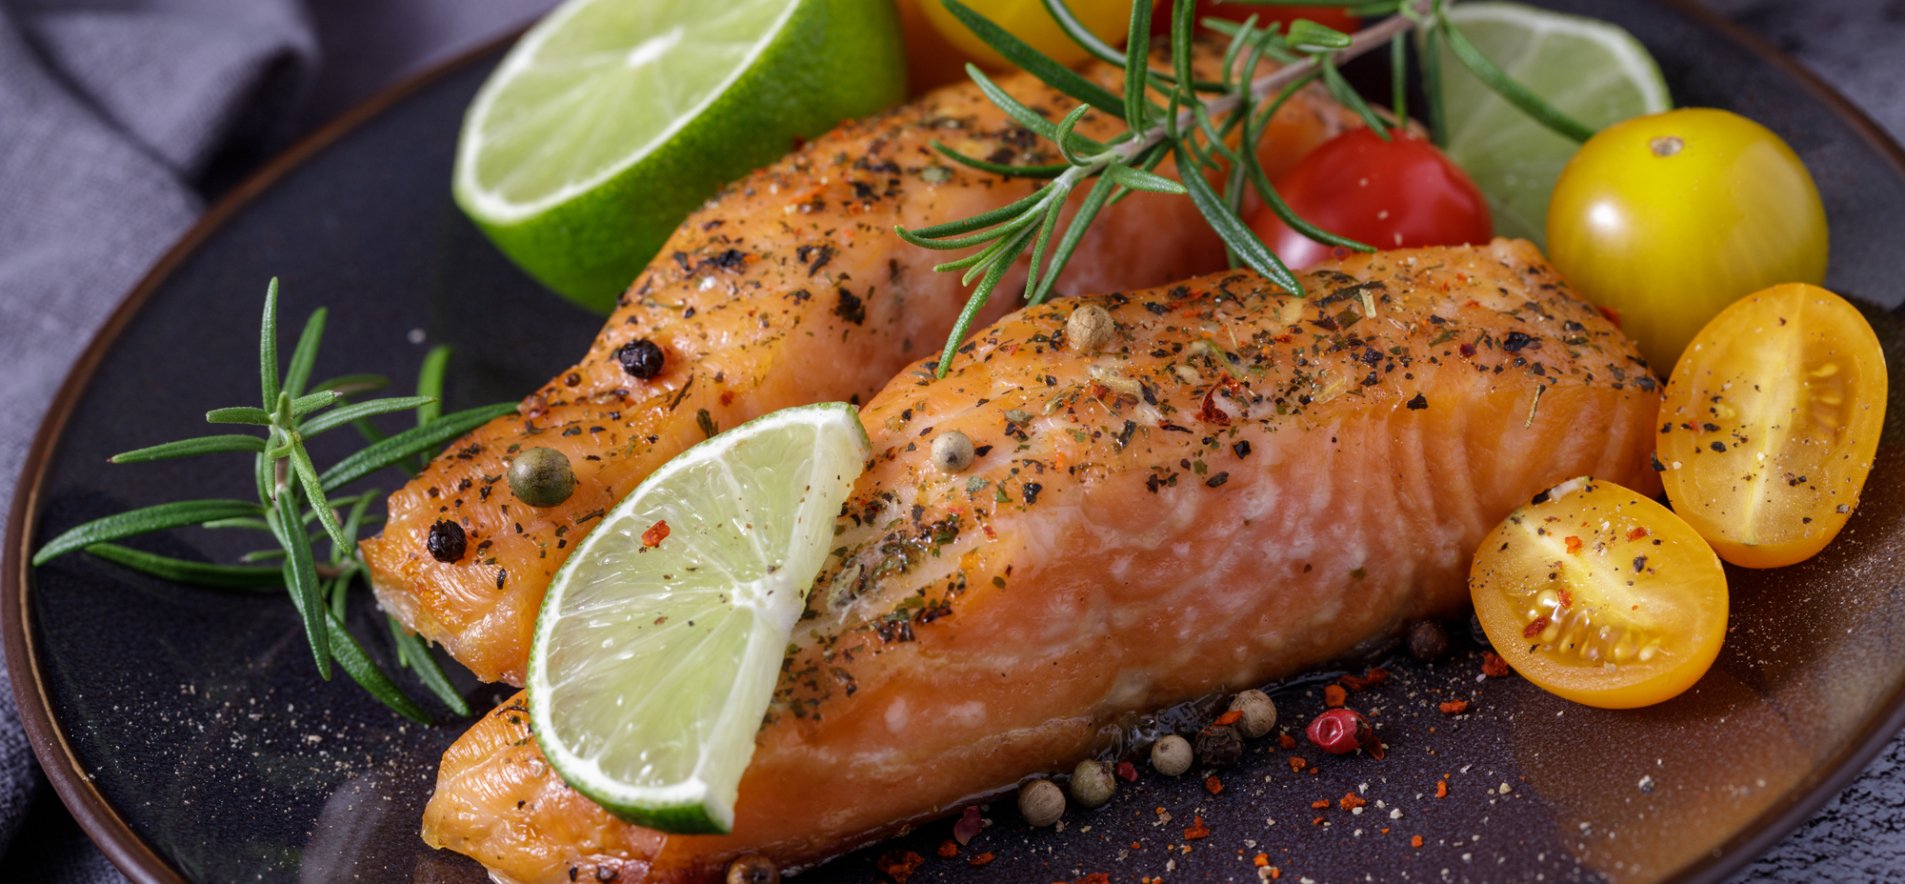 ⏰ Филе лосося на гриле: рецепт с пошаговыми фото и секреты приготовления